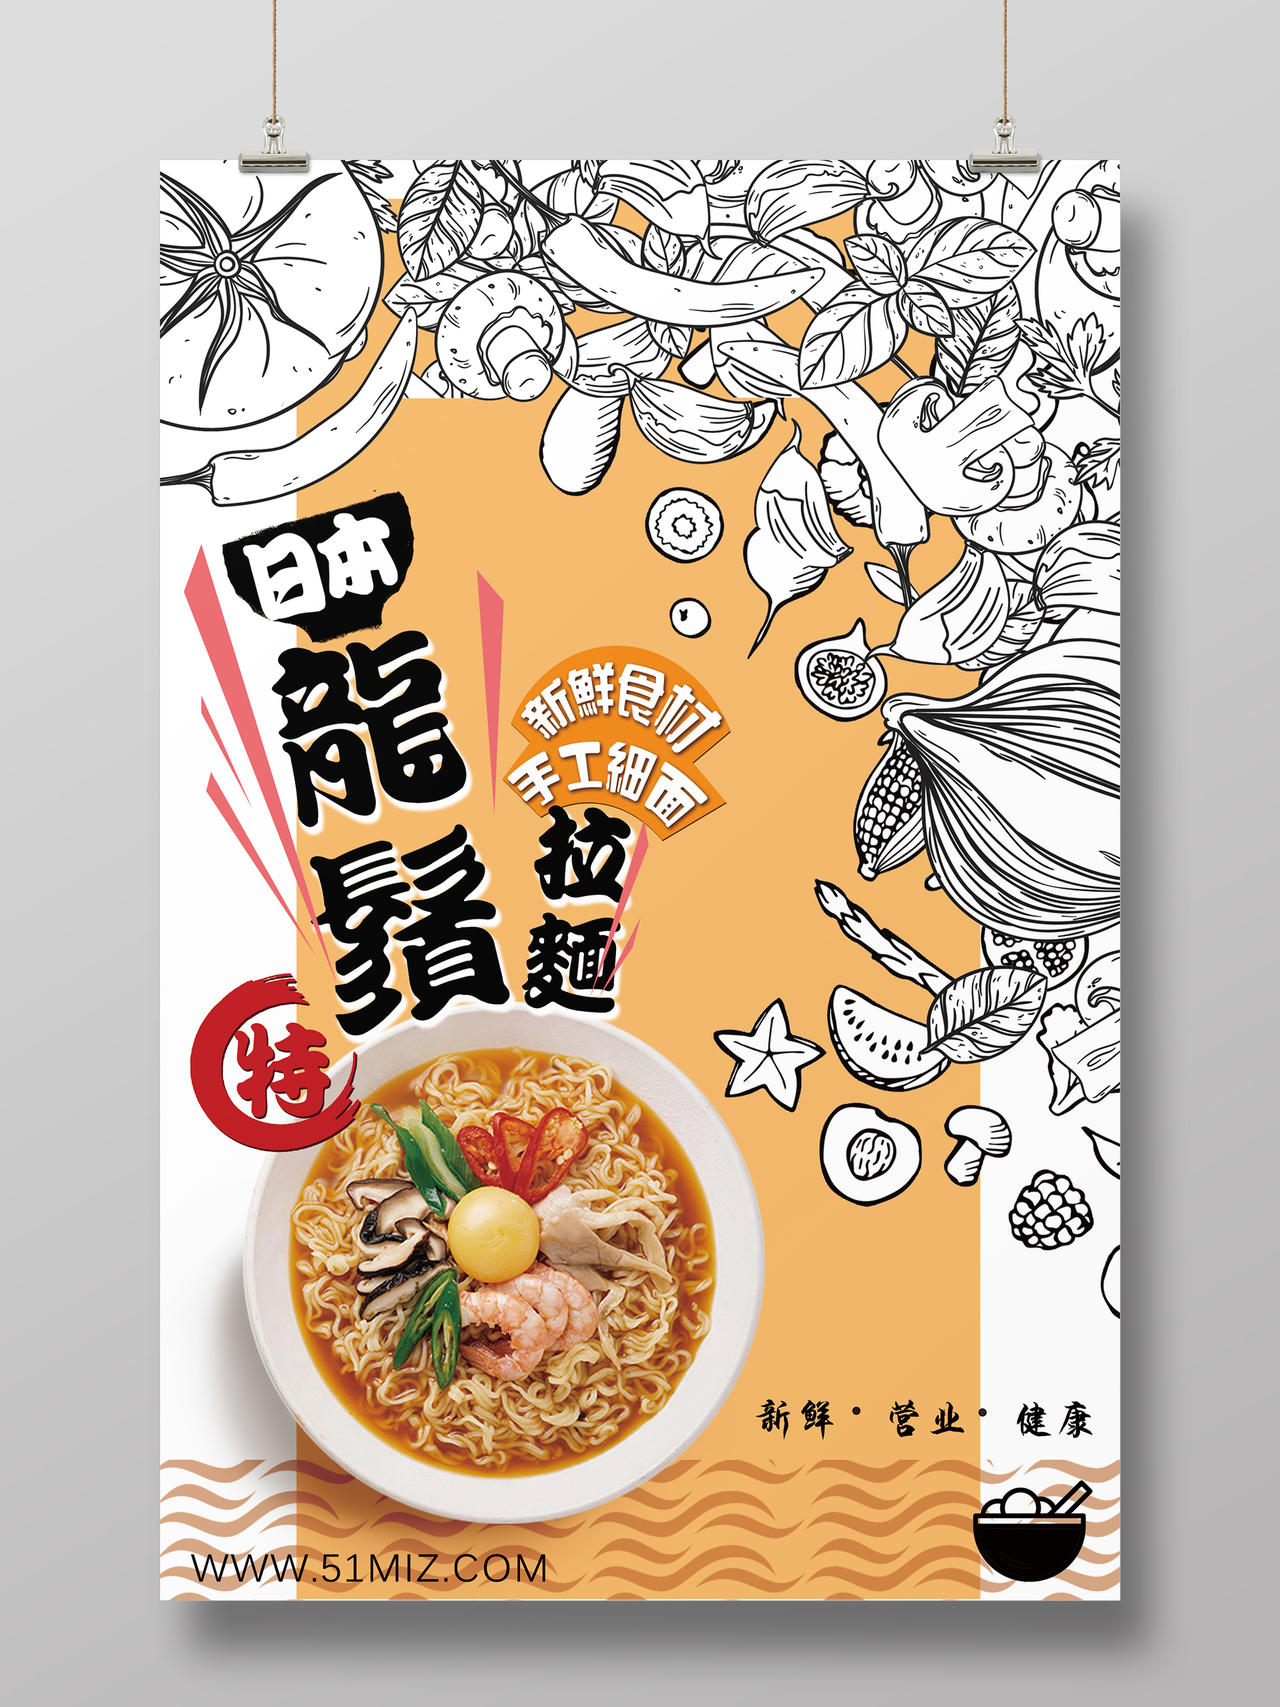 龙须拉面日本料理手绘美食黄色背景海报设计